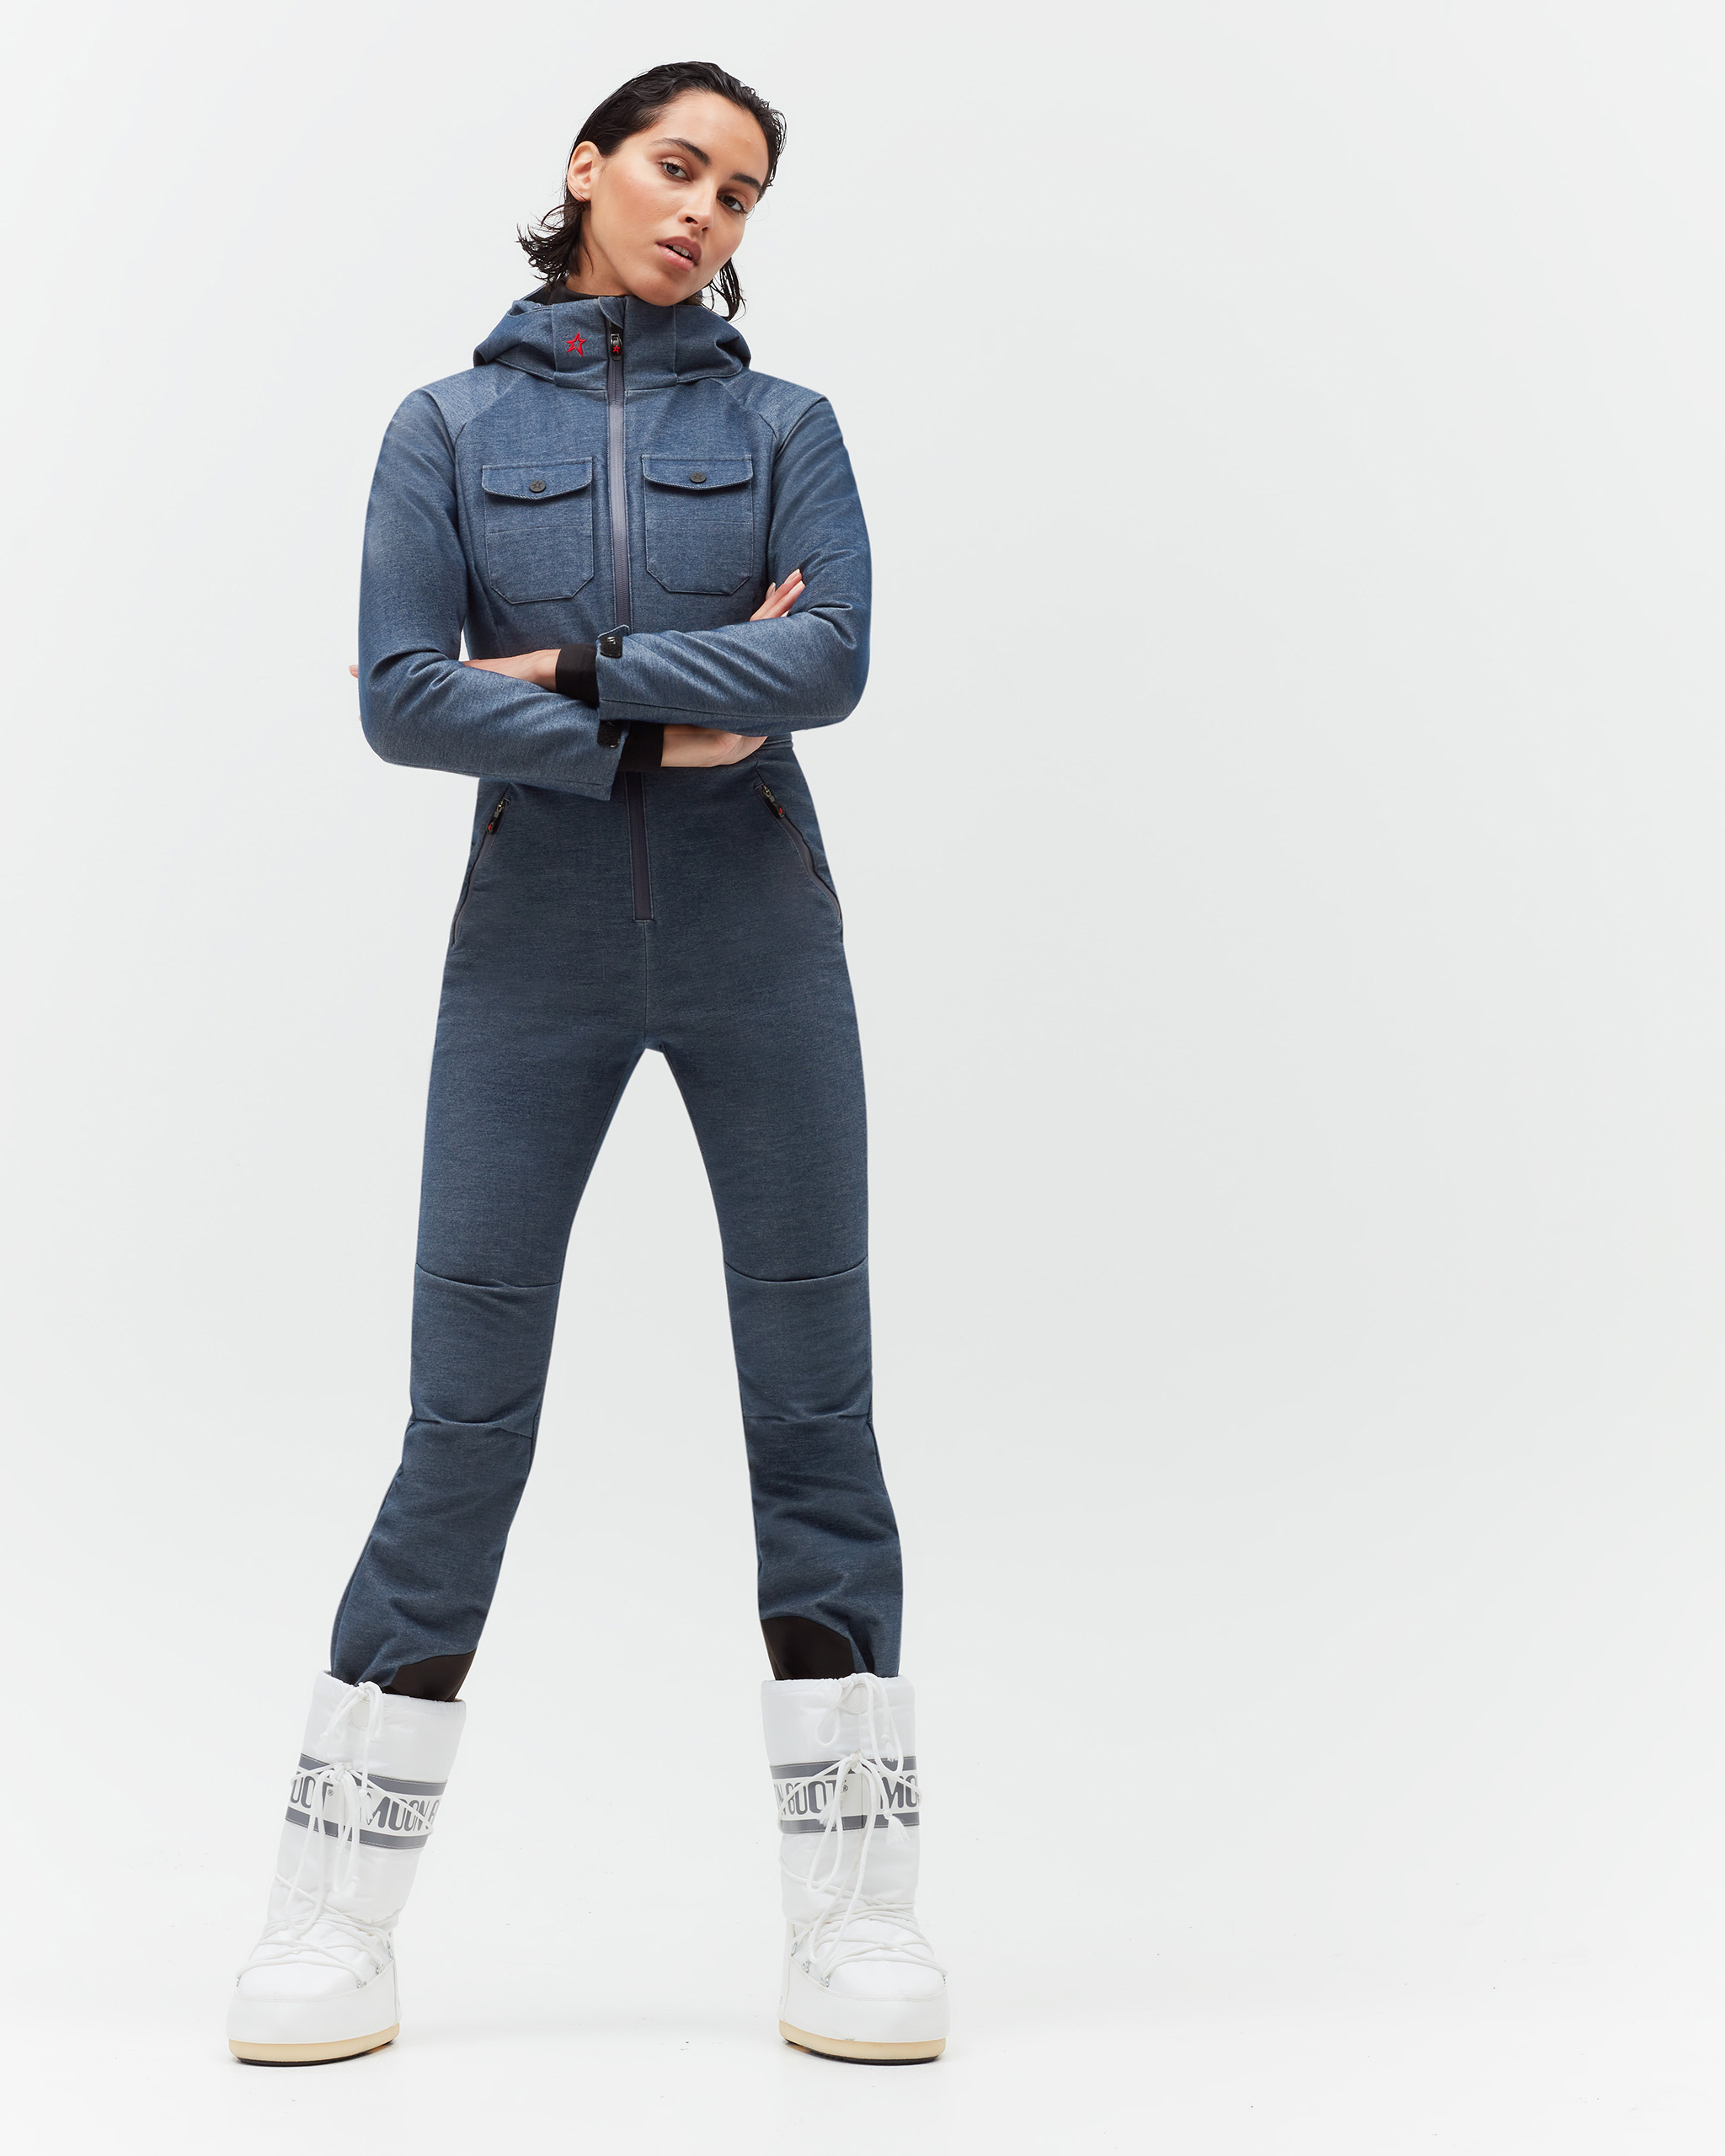 Moment | Perfect Denim Corrie Ski Suit